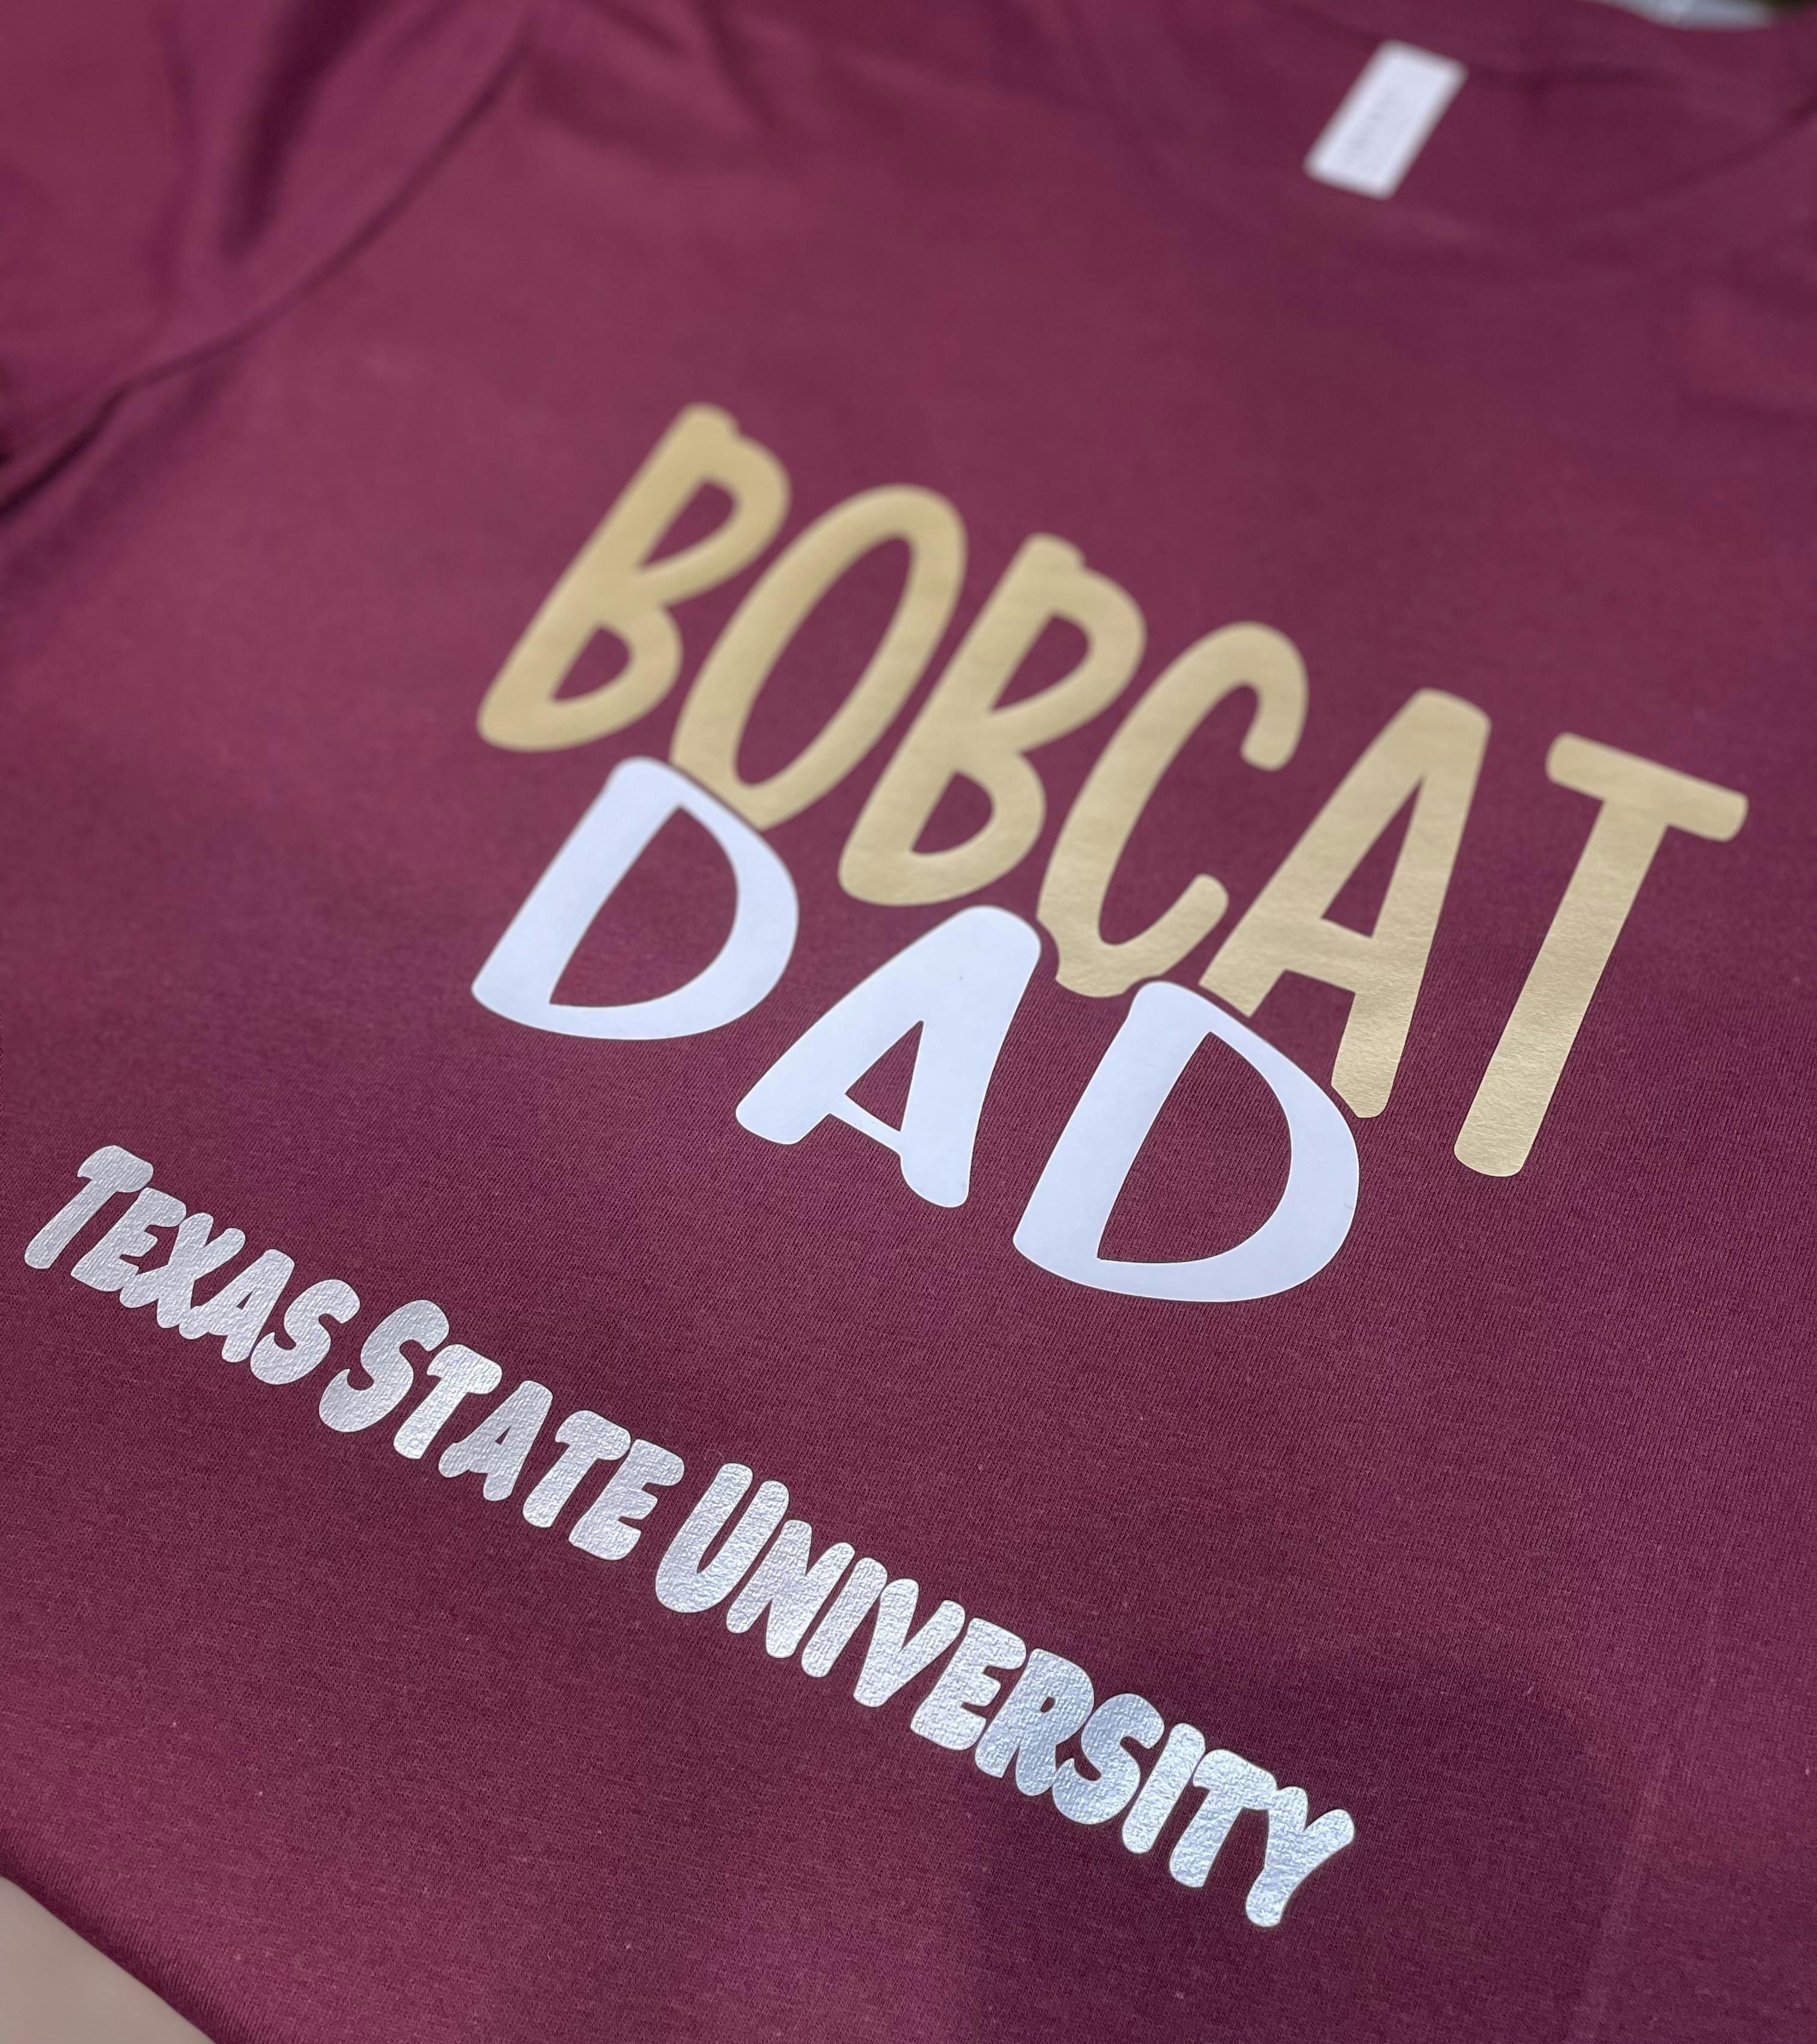 Bobcat Dad Shirt TXST Shirt Texas State University